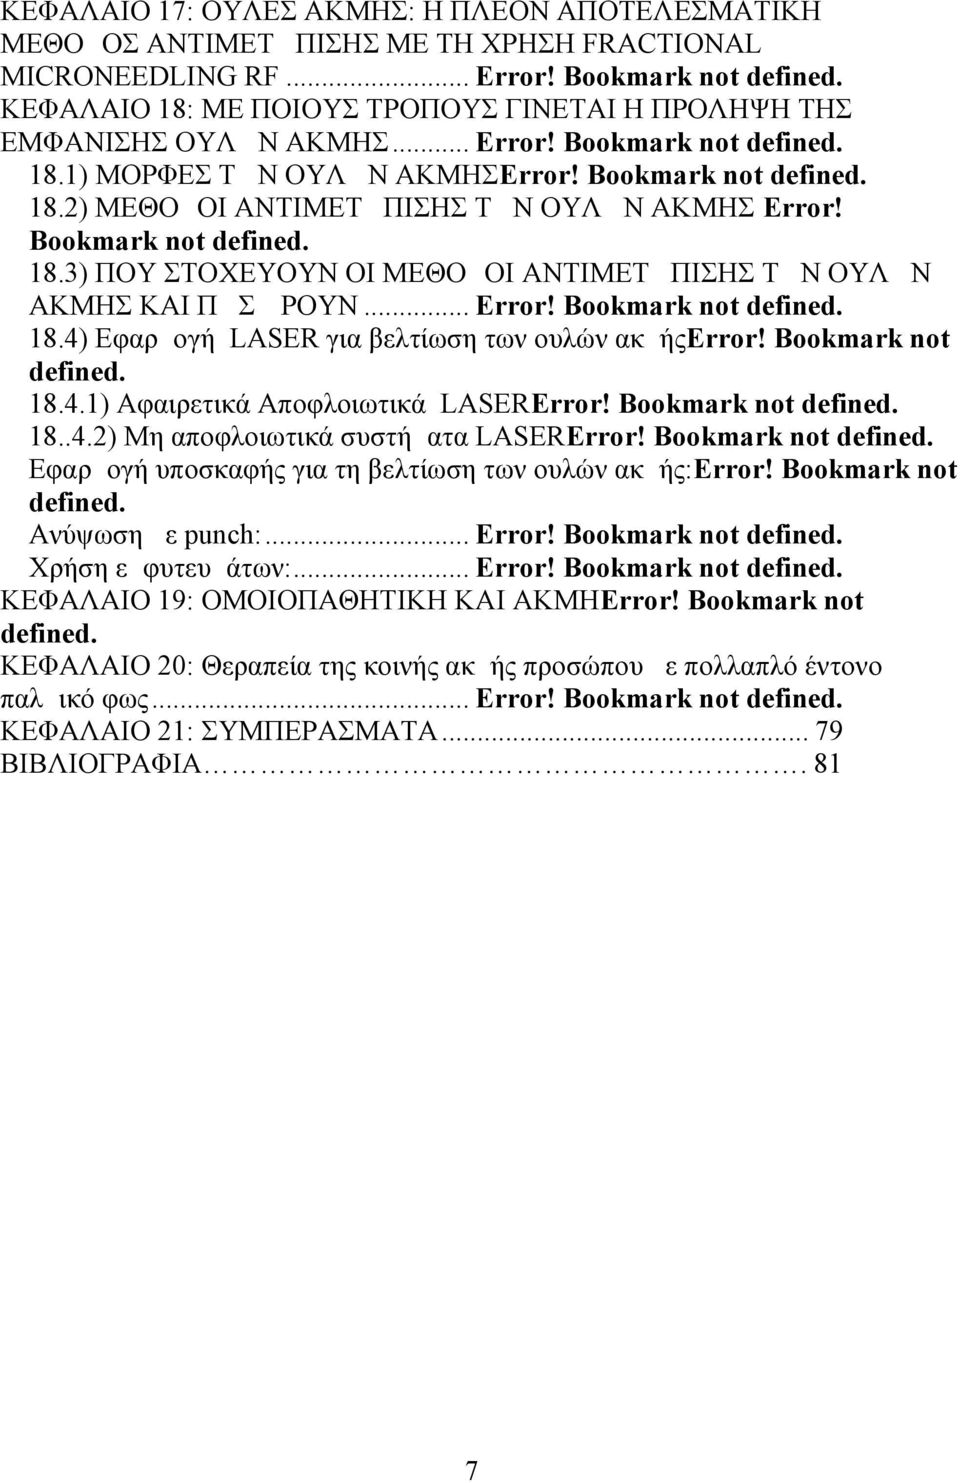 Bookmark not defined. 18.3) ΠΟΥ ΣΤΟΧΕΥΟΥΝ ΟΙ ΜΕΘΟΔΟΙ ΑΝΤΙΜΕΤΩΠΙΣΗΣ ΤΩΝ ΟΥΛΩΝ ΑΚΜΗΣ ΚΑΙ ΠΩΣ ΔΡΟΥΝ... Error! Bookmark not defined. 18.4) Εφαρμογή LASER για βελτίωση των ουλών ακμήςerror!